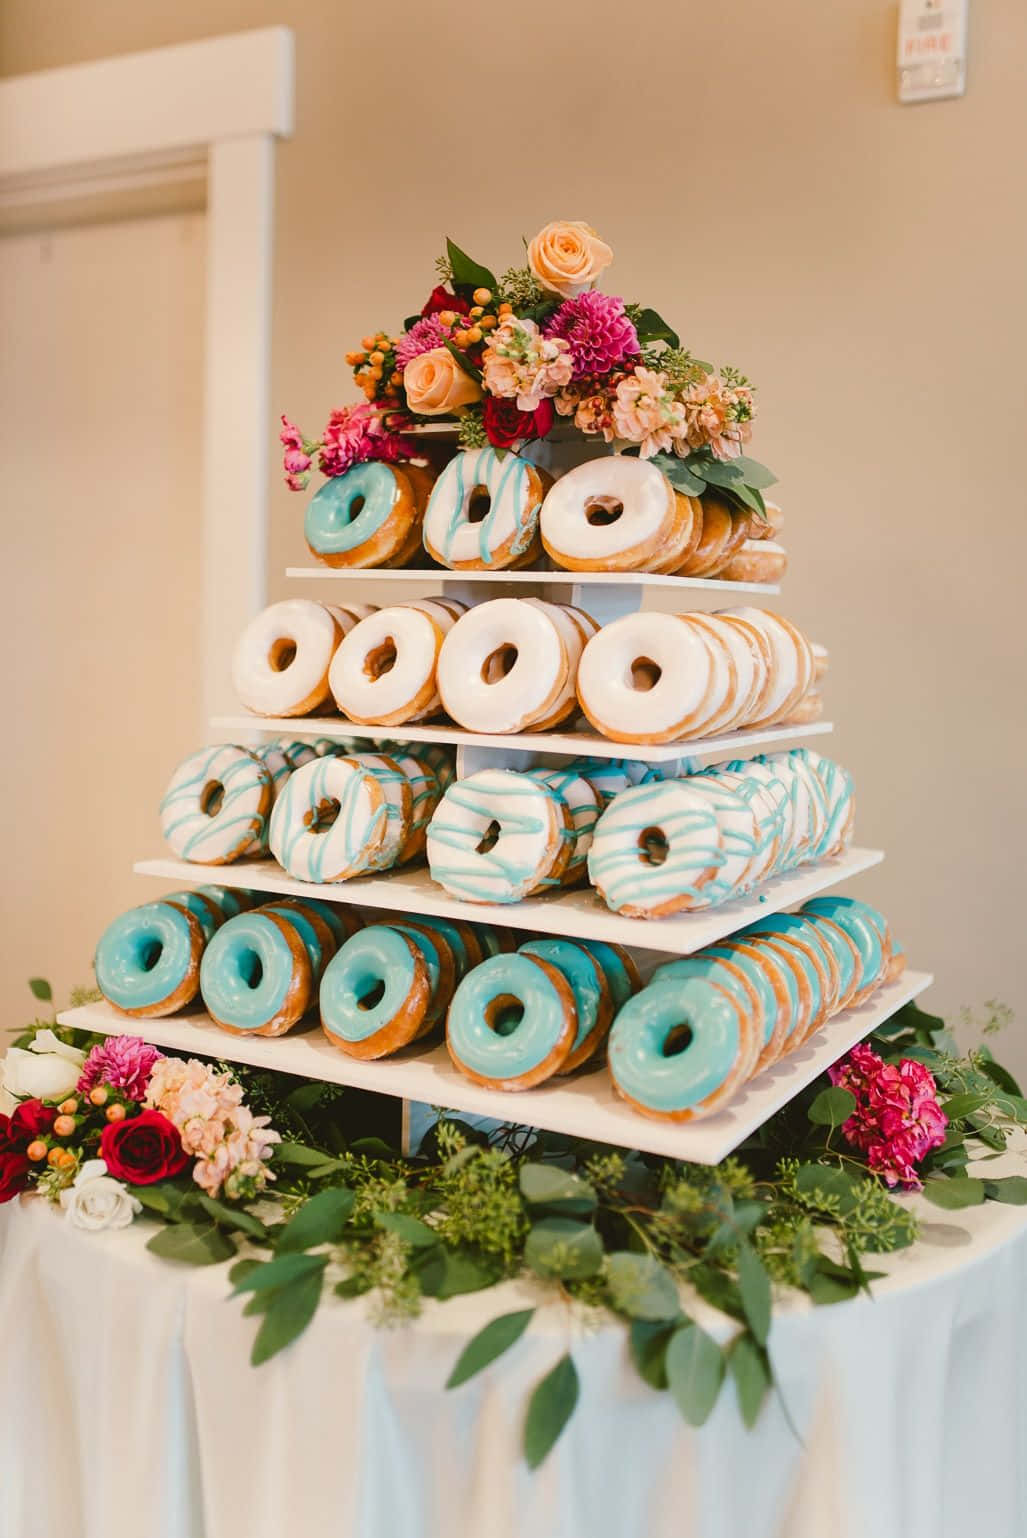 Immaginedi Una Torta A Forma Di Donuts Per Un Matrimonio O Una Festa Di Addio Al Nubilato.